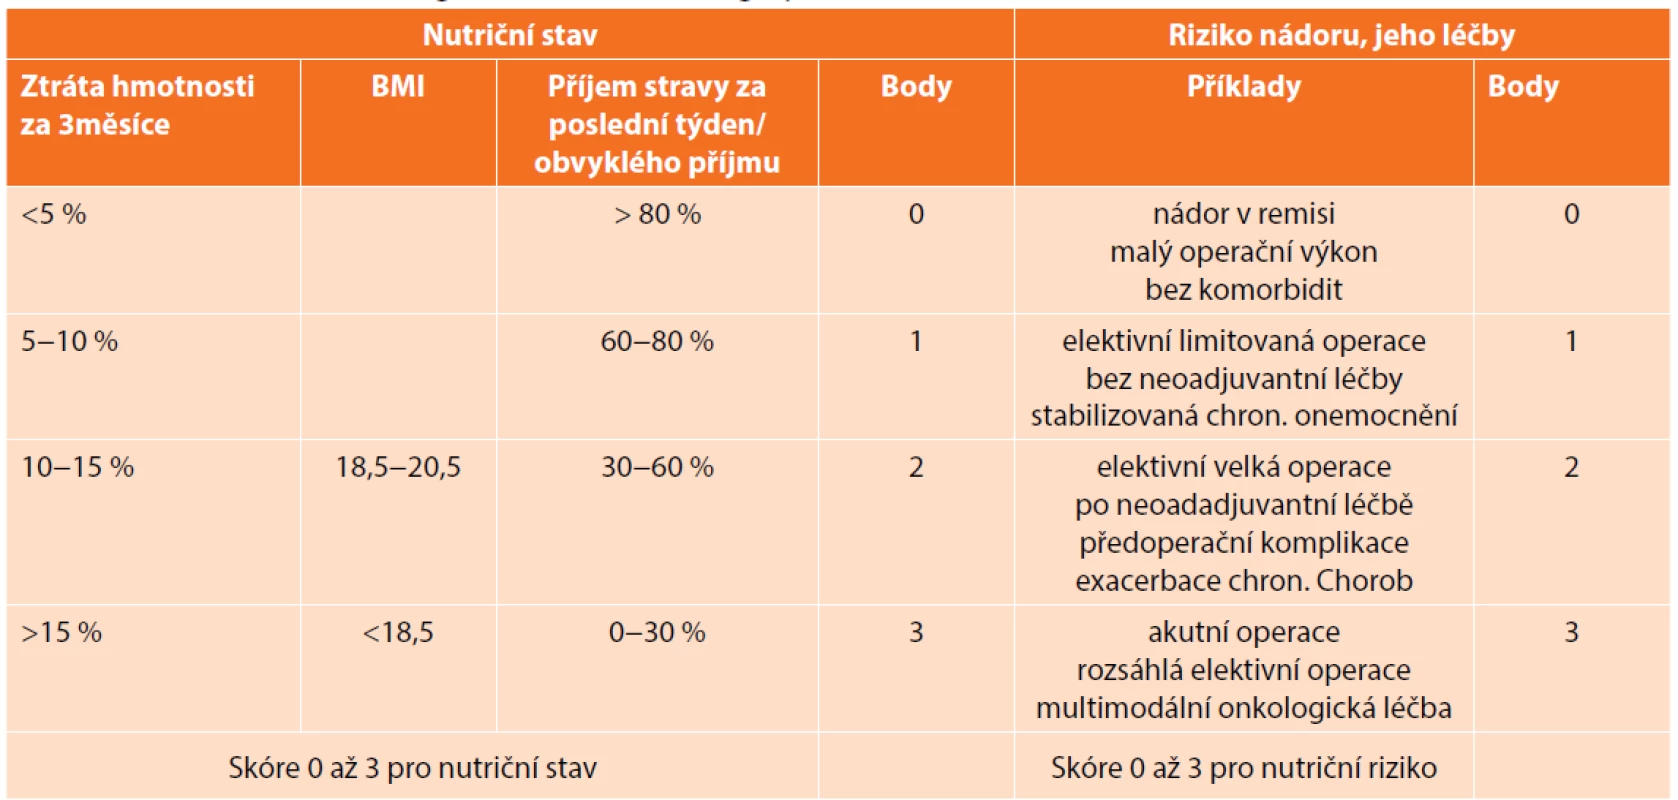 Nutriční rizikový screening NRS 2002 před operací<br>
Tab. 1. Nutritional risk screening NRS 2002 before surgery